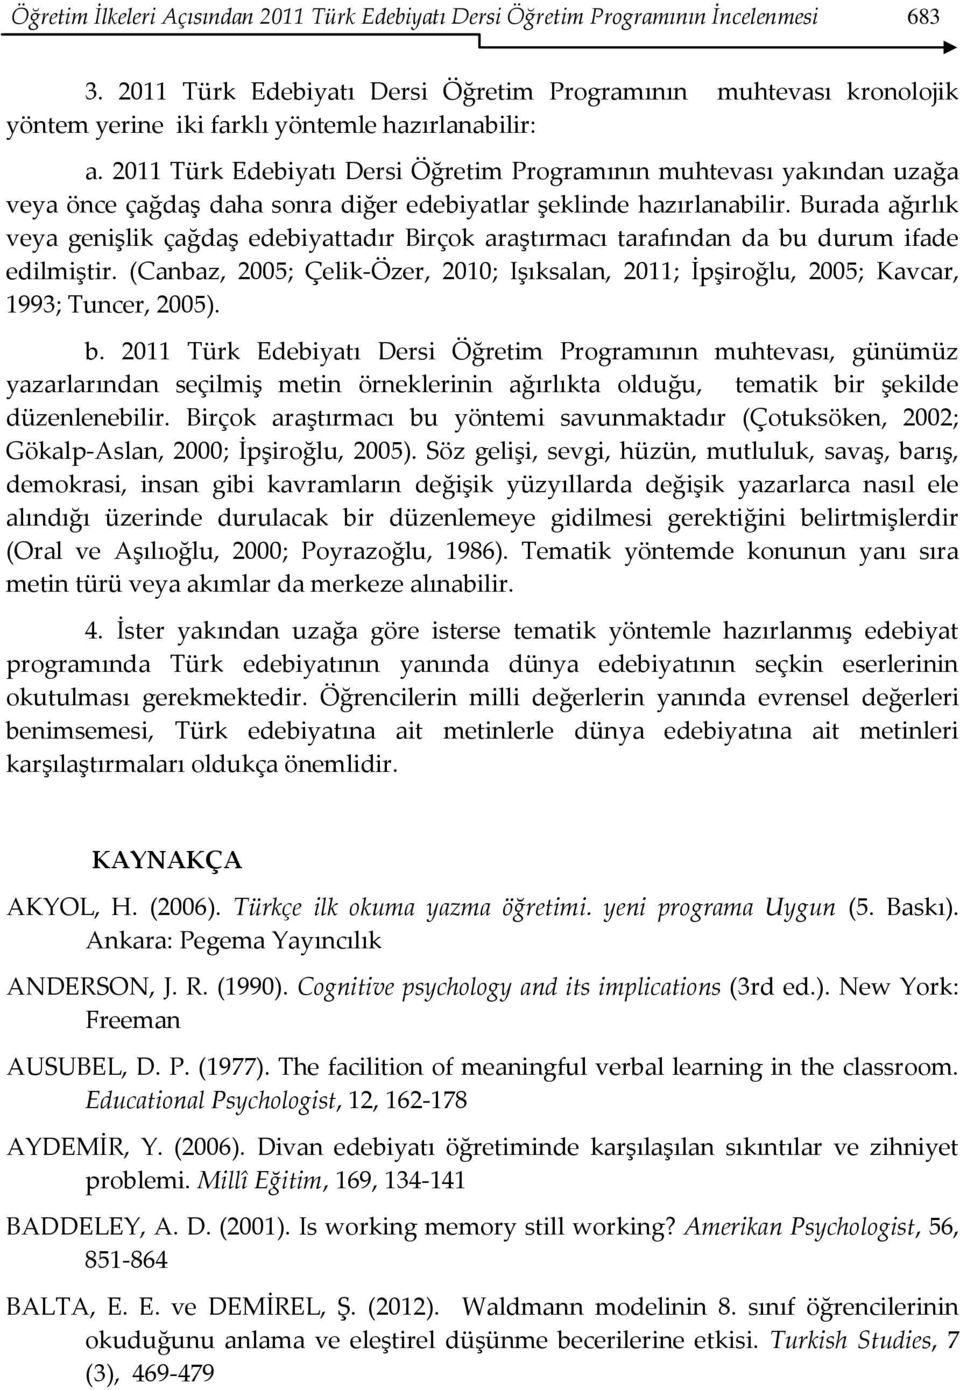 2011 Türk Edebiyatı Dersi Öğretim Programının muhtevası yakından uzağa veya önce çağdaş daha sonra diğer edebiyatlar şeklinde hazırlanabilir.